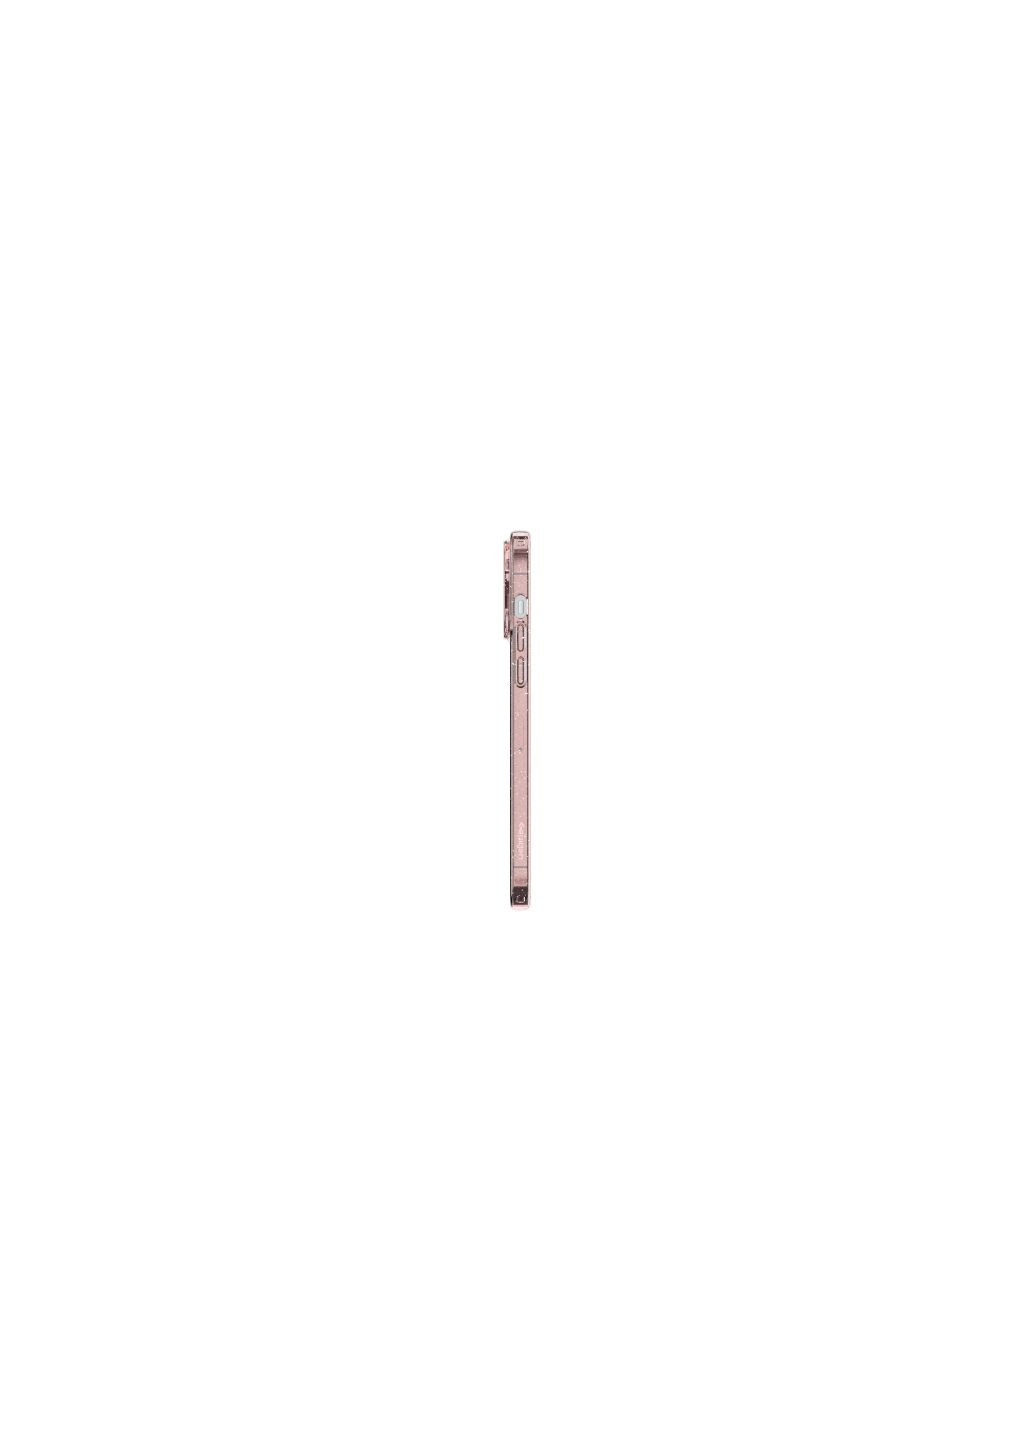 Чехол для мобильного телефона Apple Iphone 14 Pro Max Liquid Crystal Glitter, Rose Quartz (ACS04811) Spigen apple iphone 14 pro max liquid crystal glitter, ro (275080289)